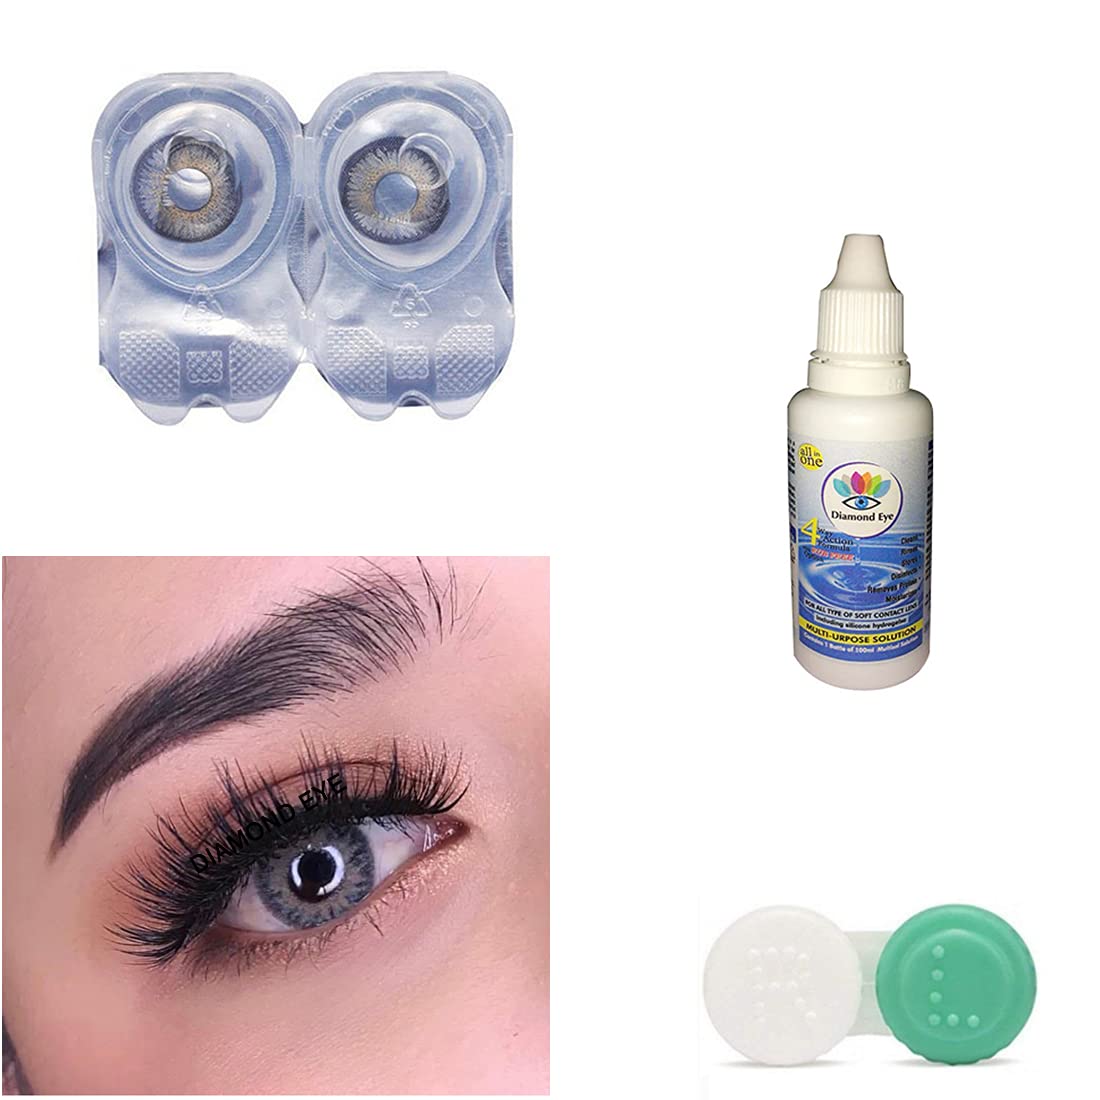 Diamond Eye contact lens